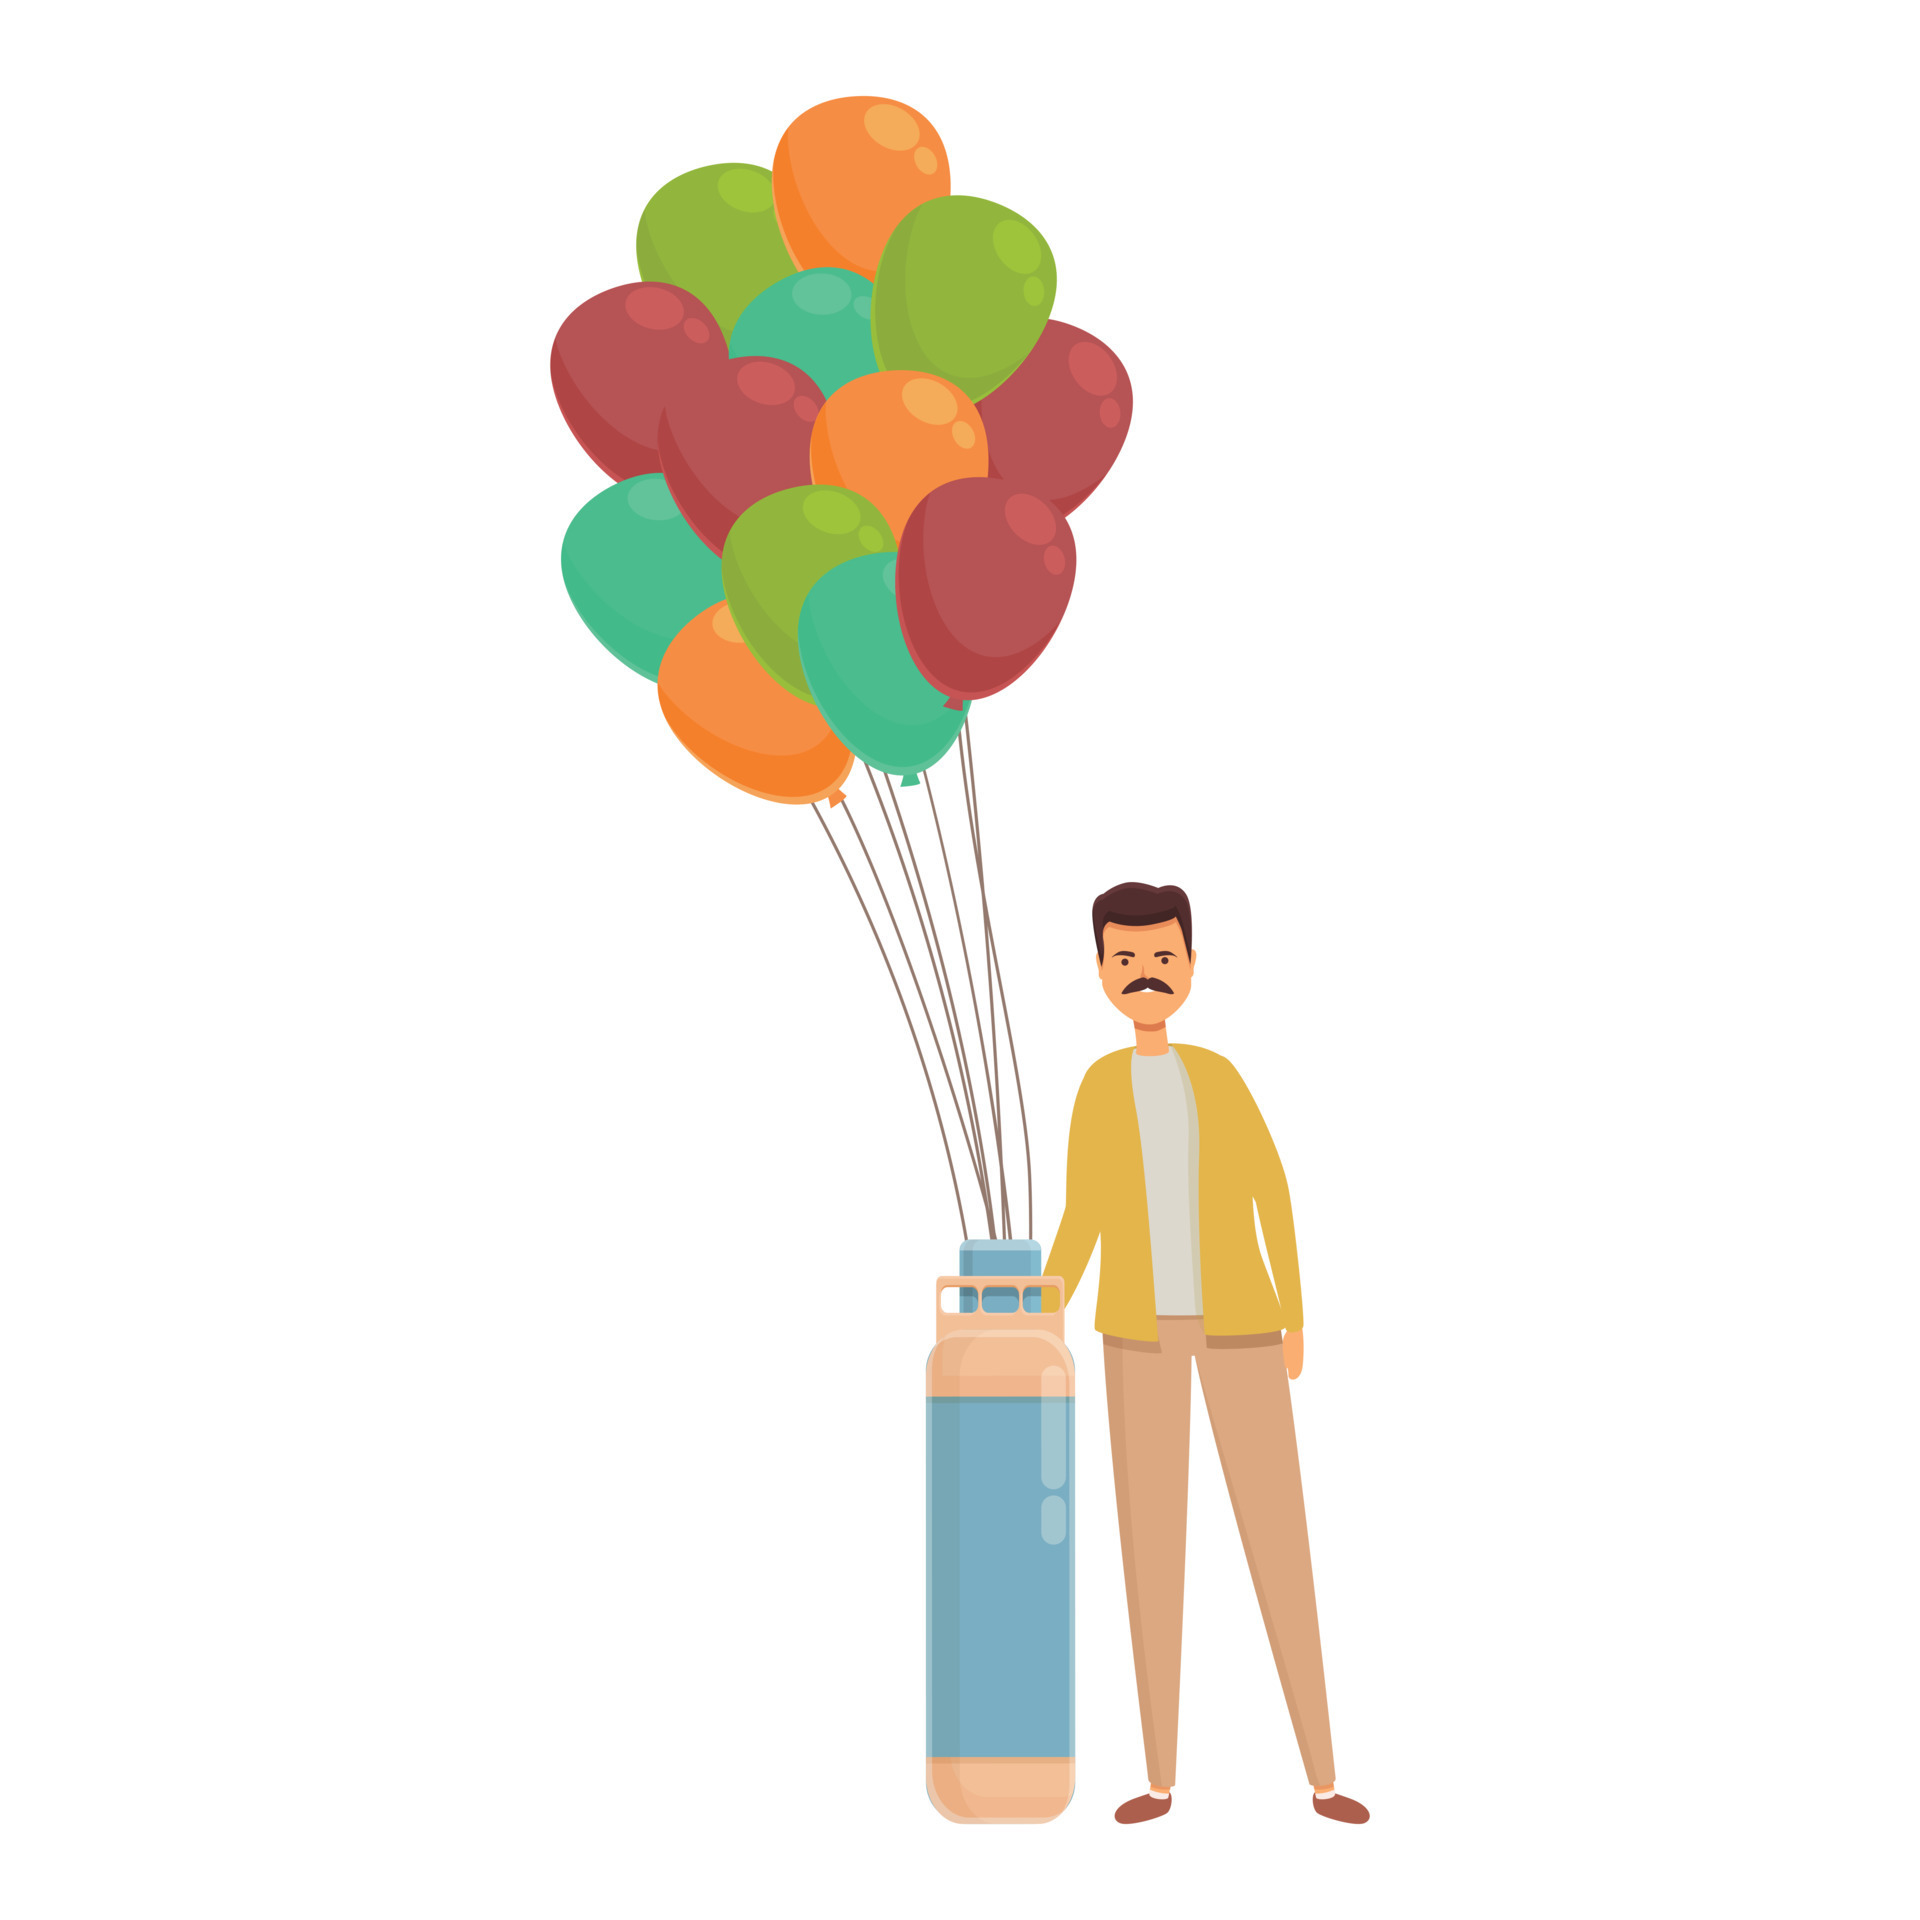 Indian balloon seller icon cartoon vector. Street man 14339310 Vector Art  at Vecteezy